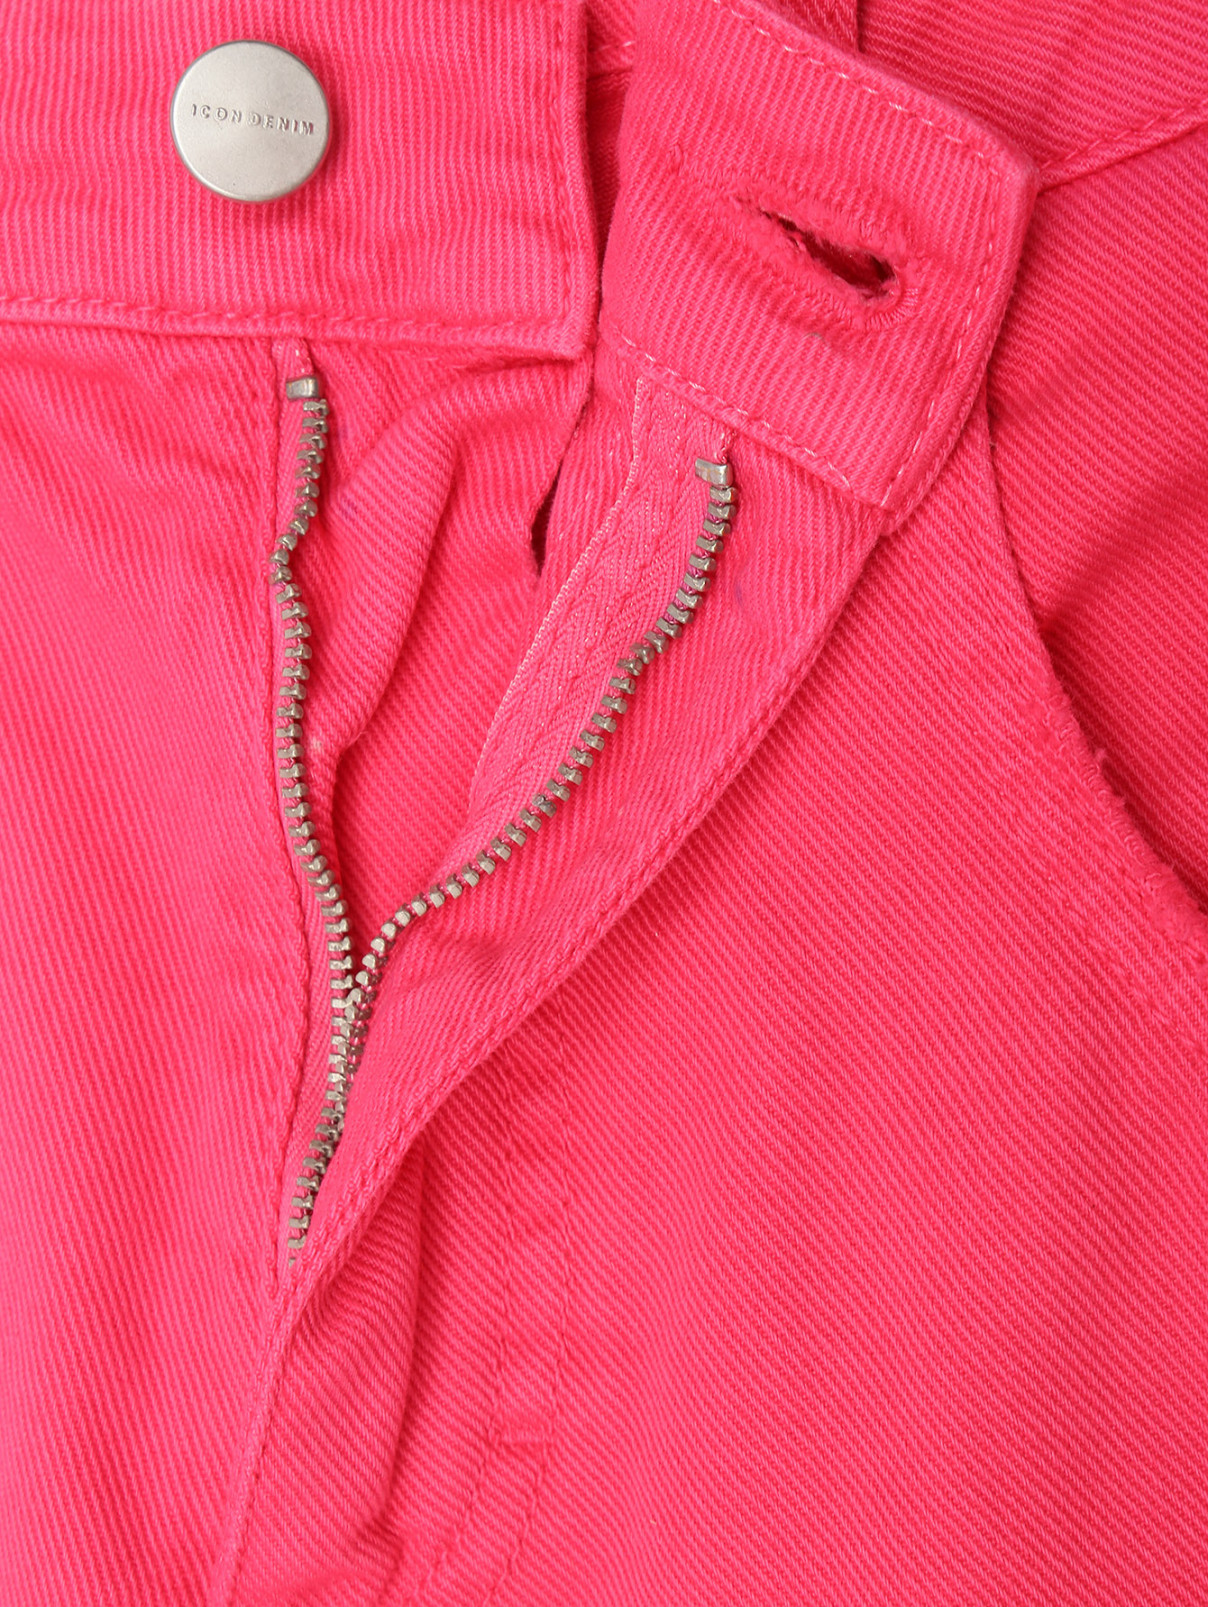 Цветные джинсы из хлопка Icon Denim La  –  Деталь1  – Цвет:  Красный